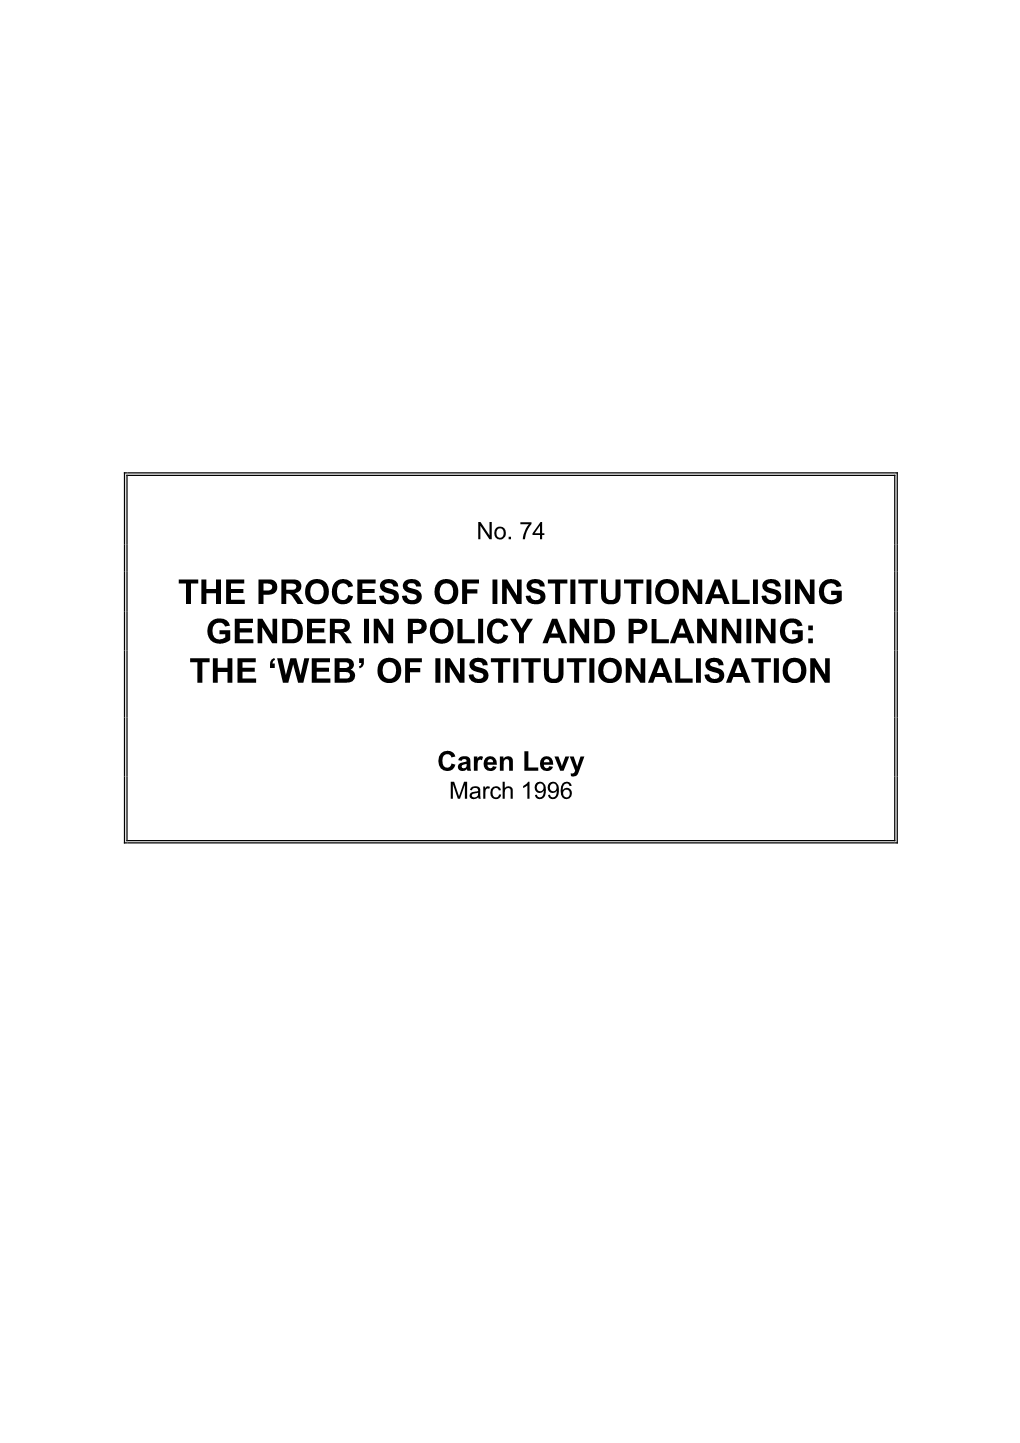 Of Institutionalisation